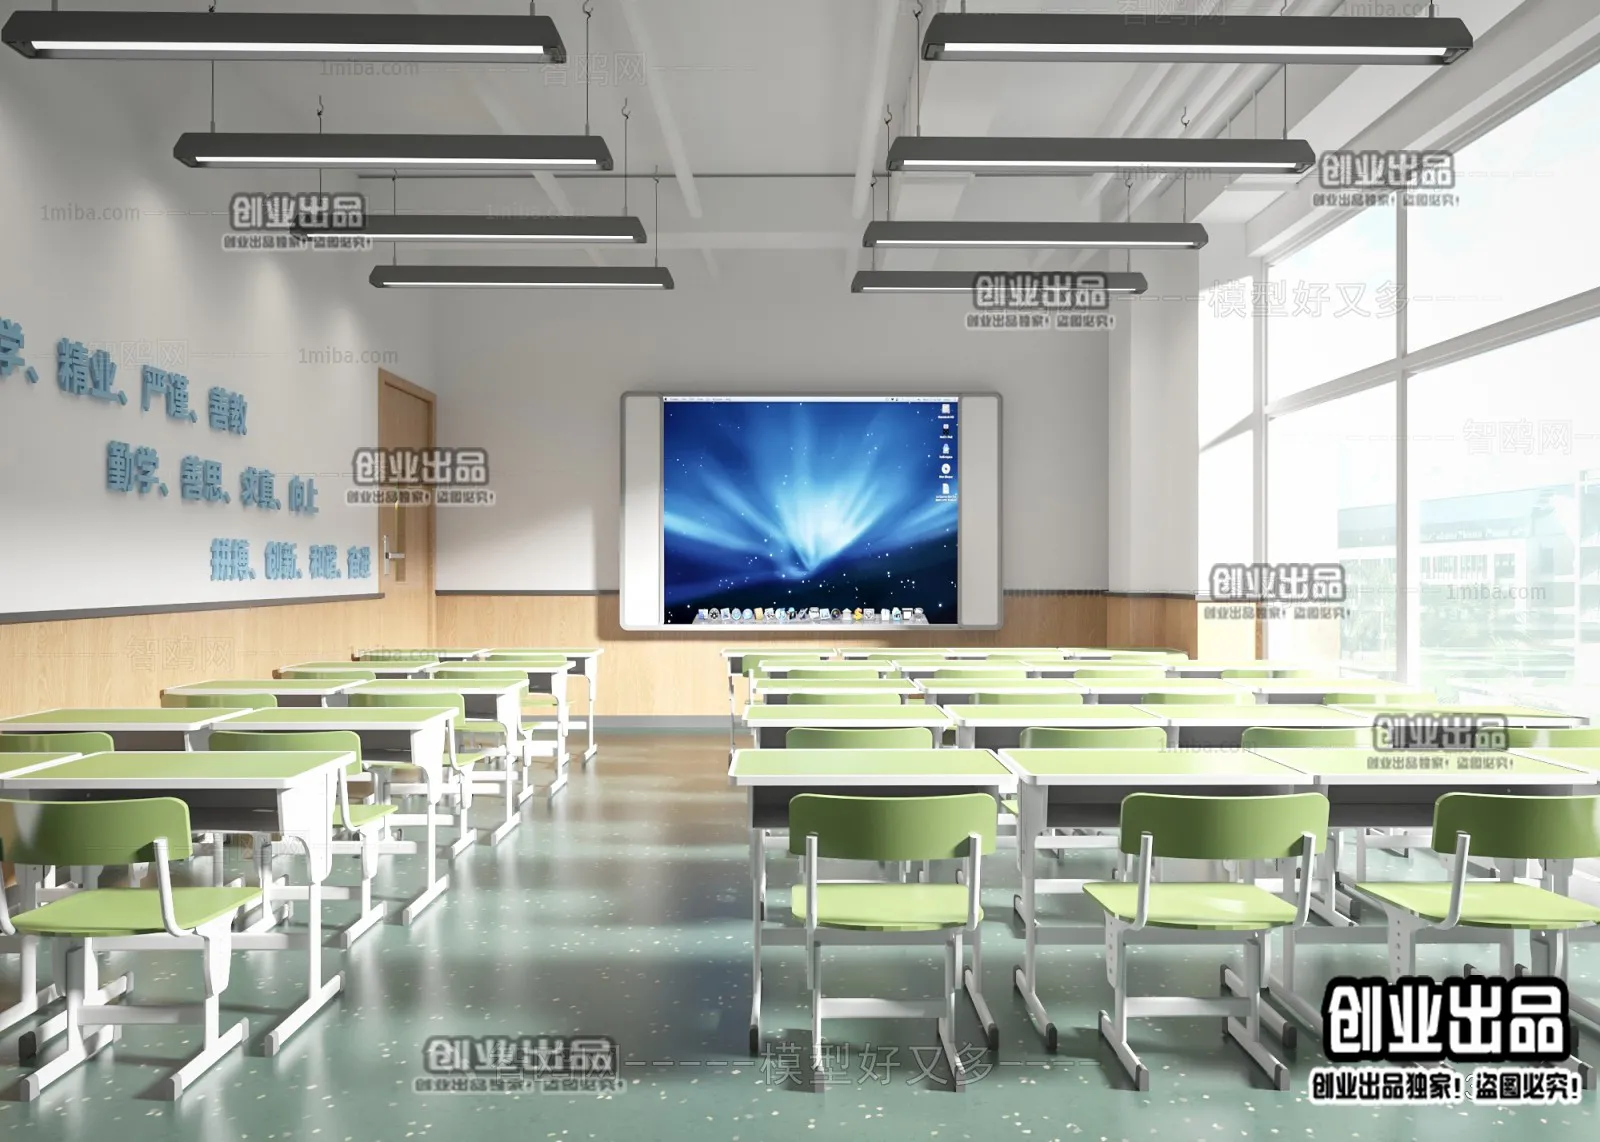 3D SCHOOL INTERIOR (VRAY) – CLASSROOM 3D SCENES – 019